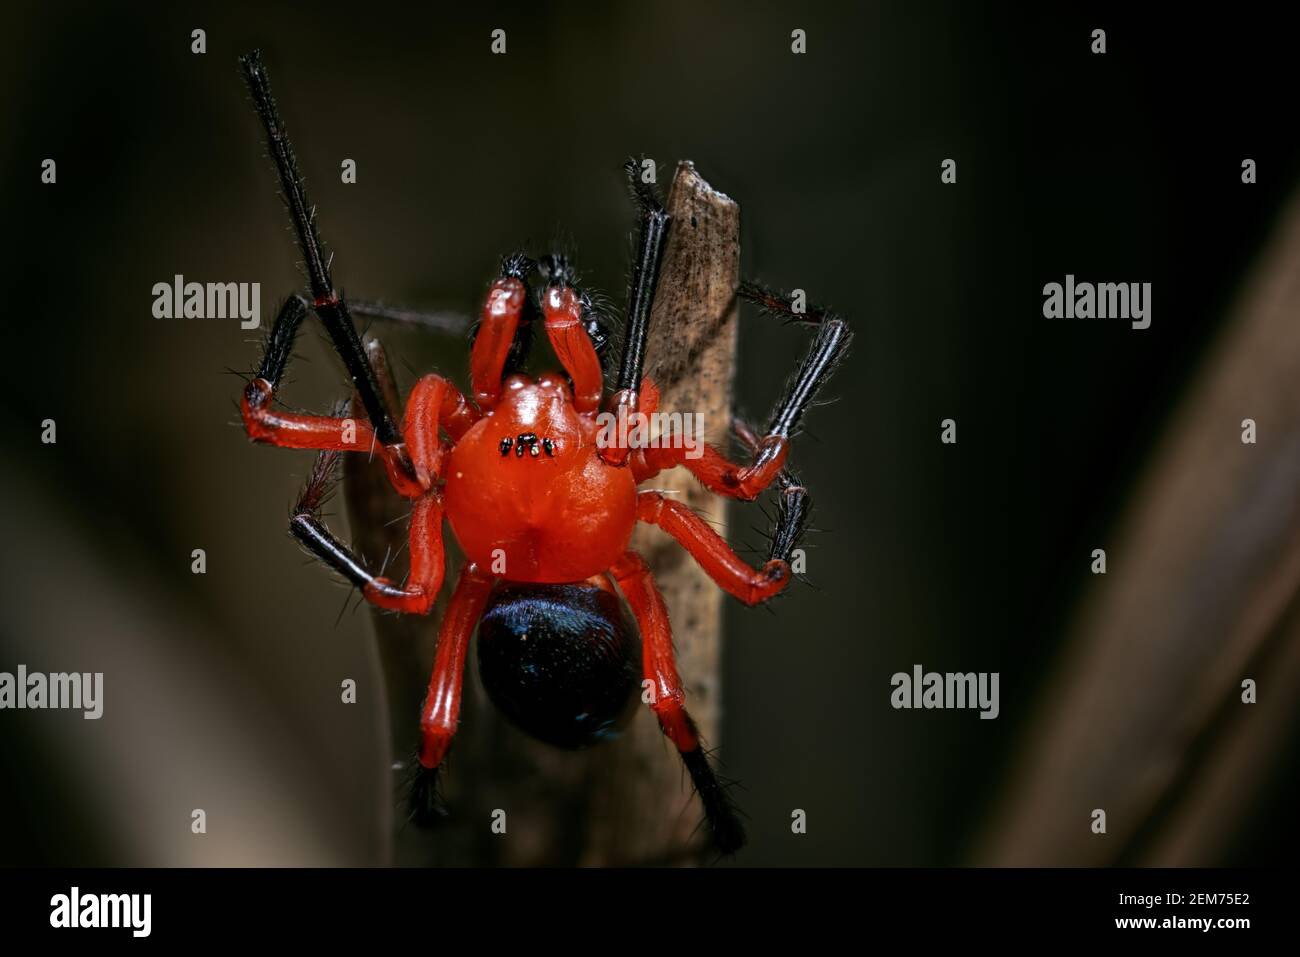 Araignée rouge et noire, Nicodadidae, gros plan Banque D'Images